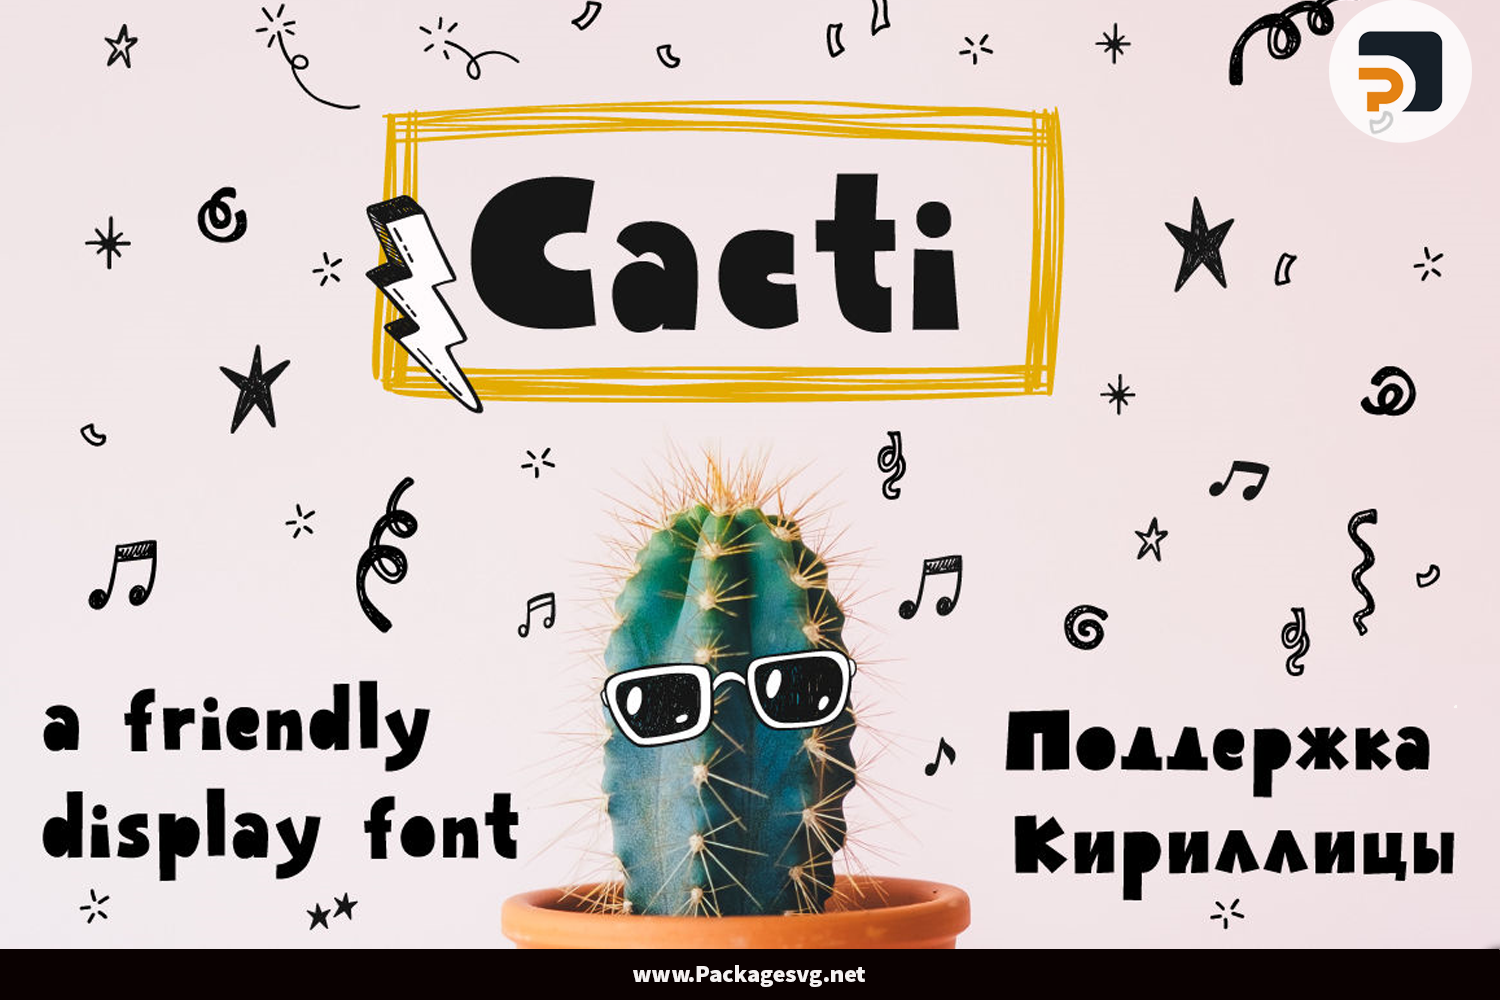 Cacti Display Font